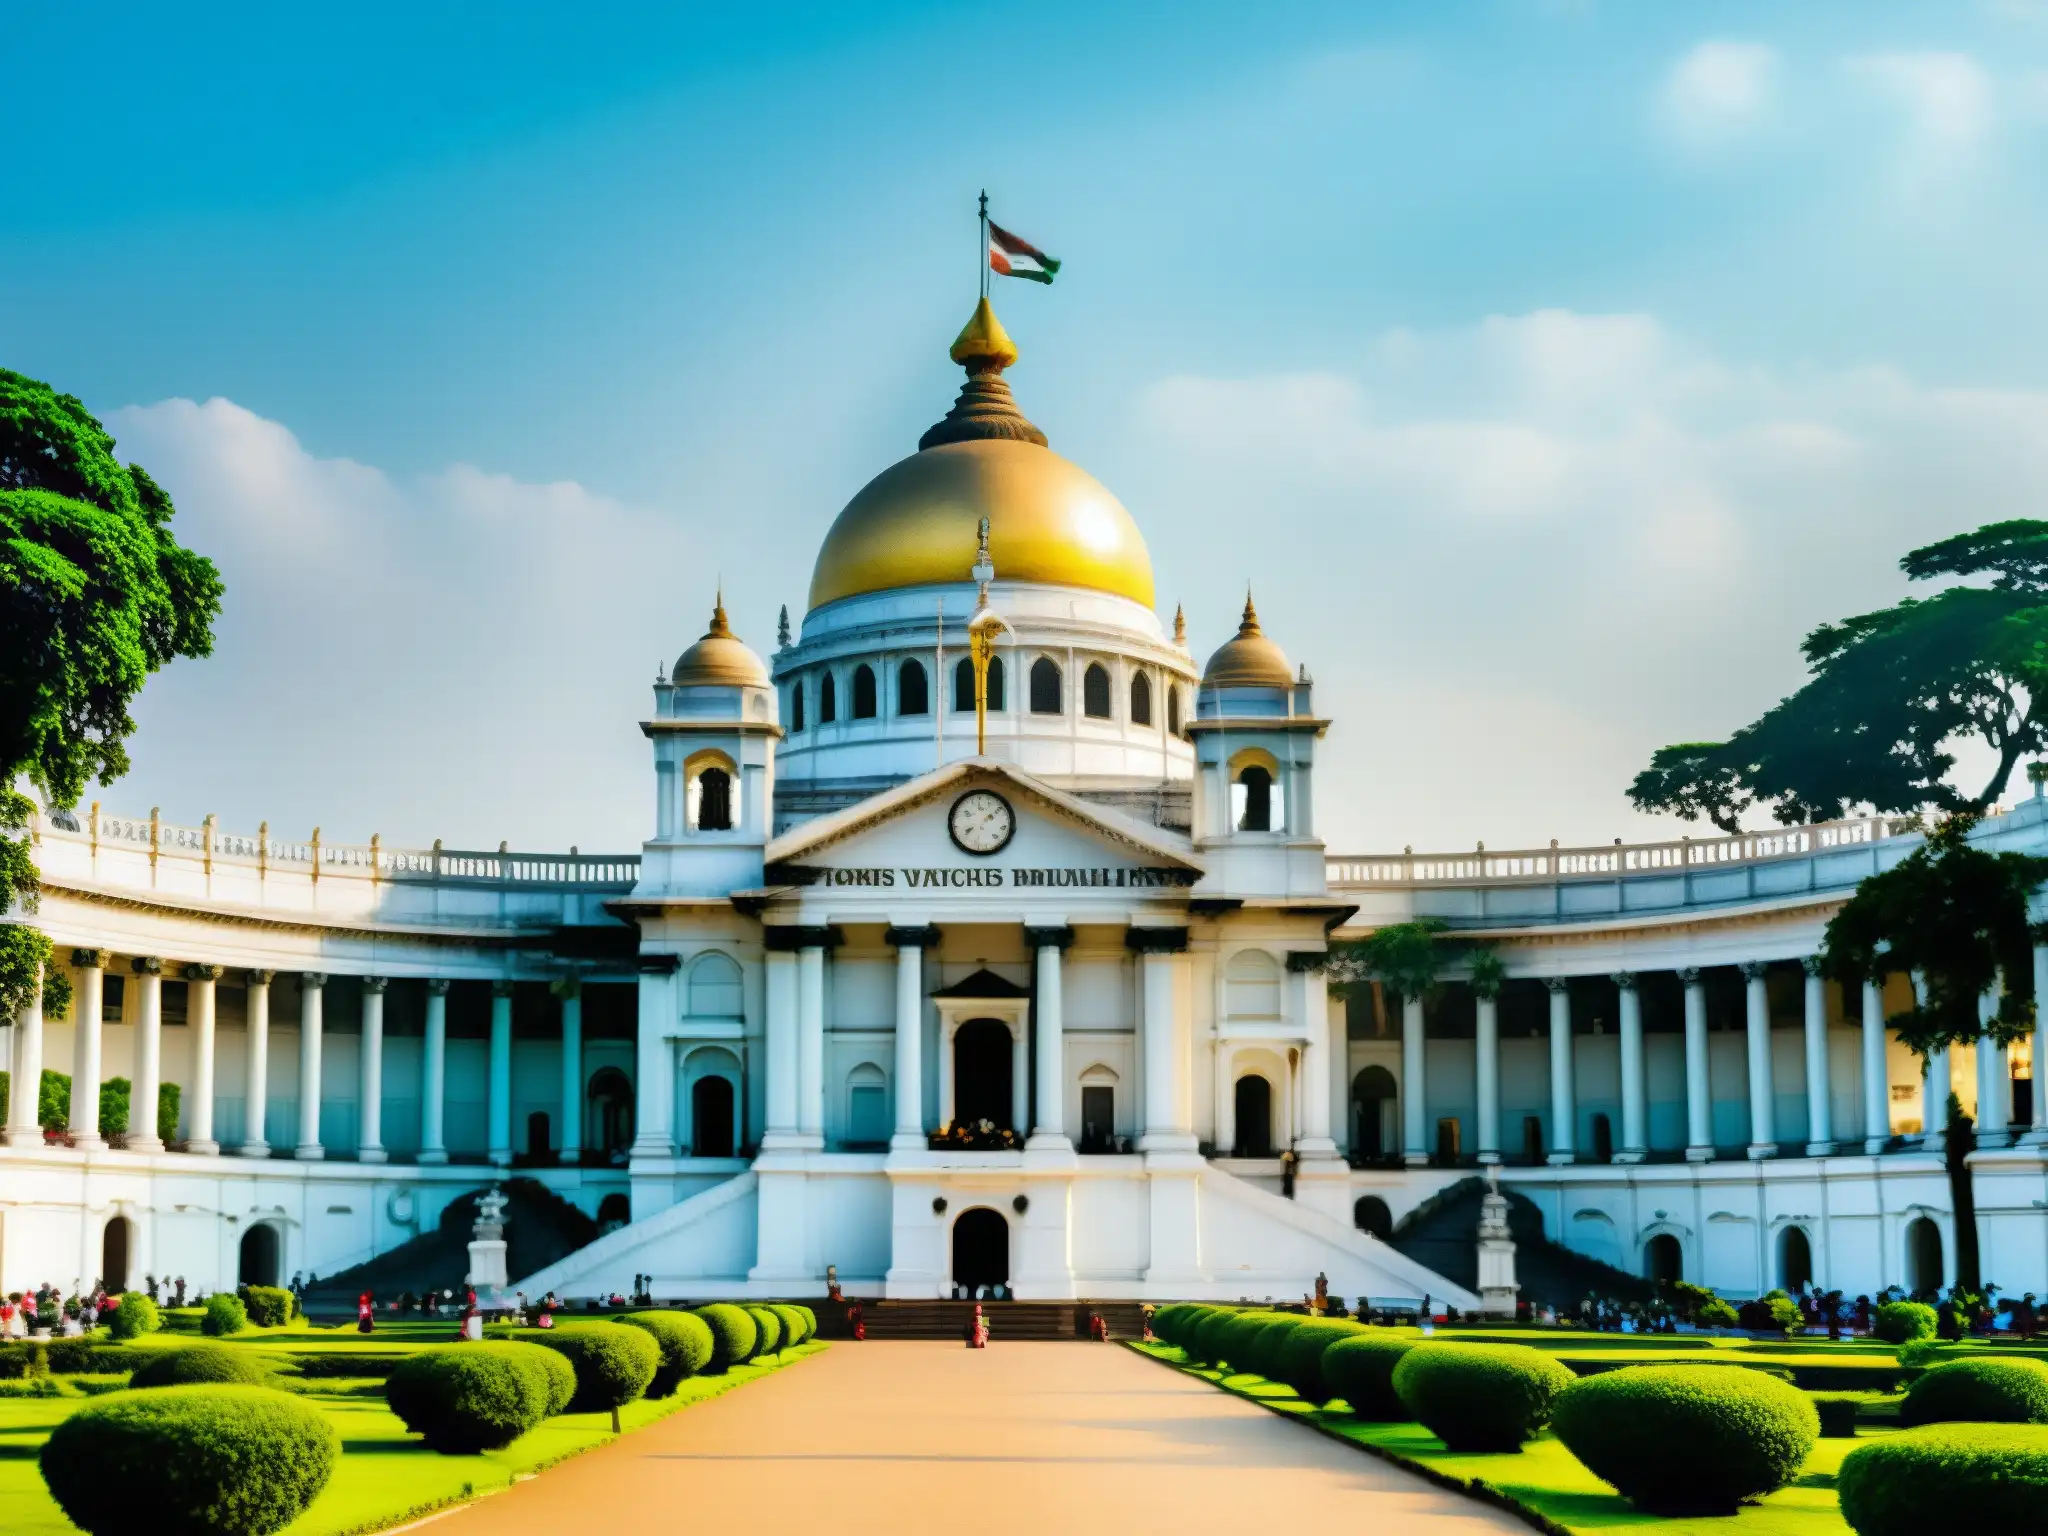 Una impresionante fotografía documental de alta resolución del icónico Victoria Memorial en Kolkata, India